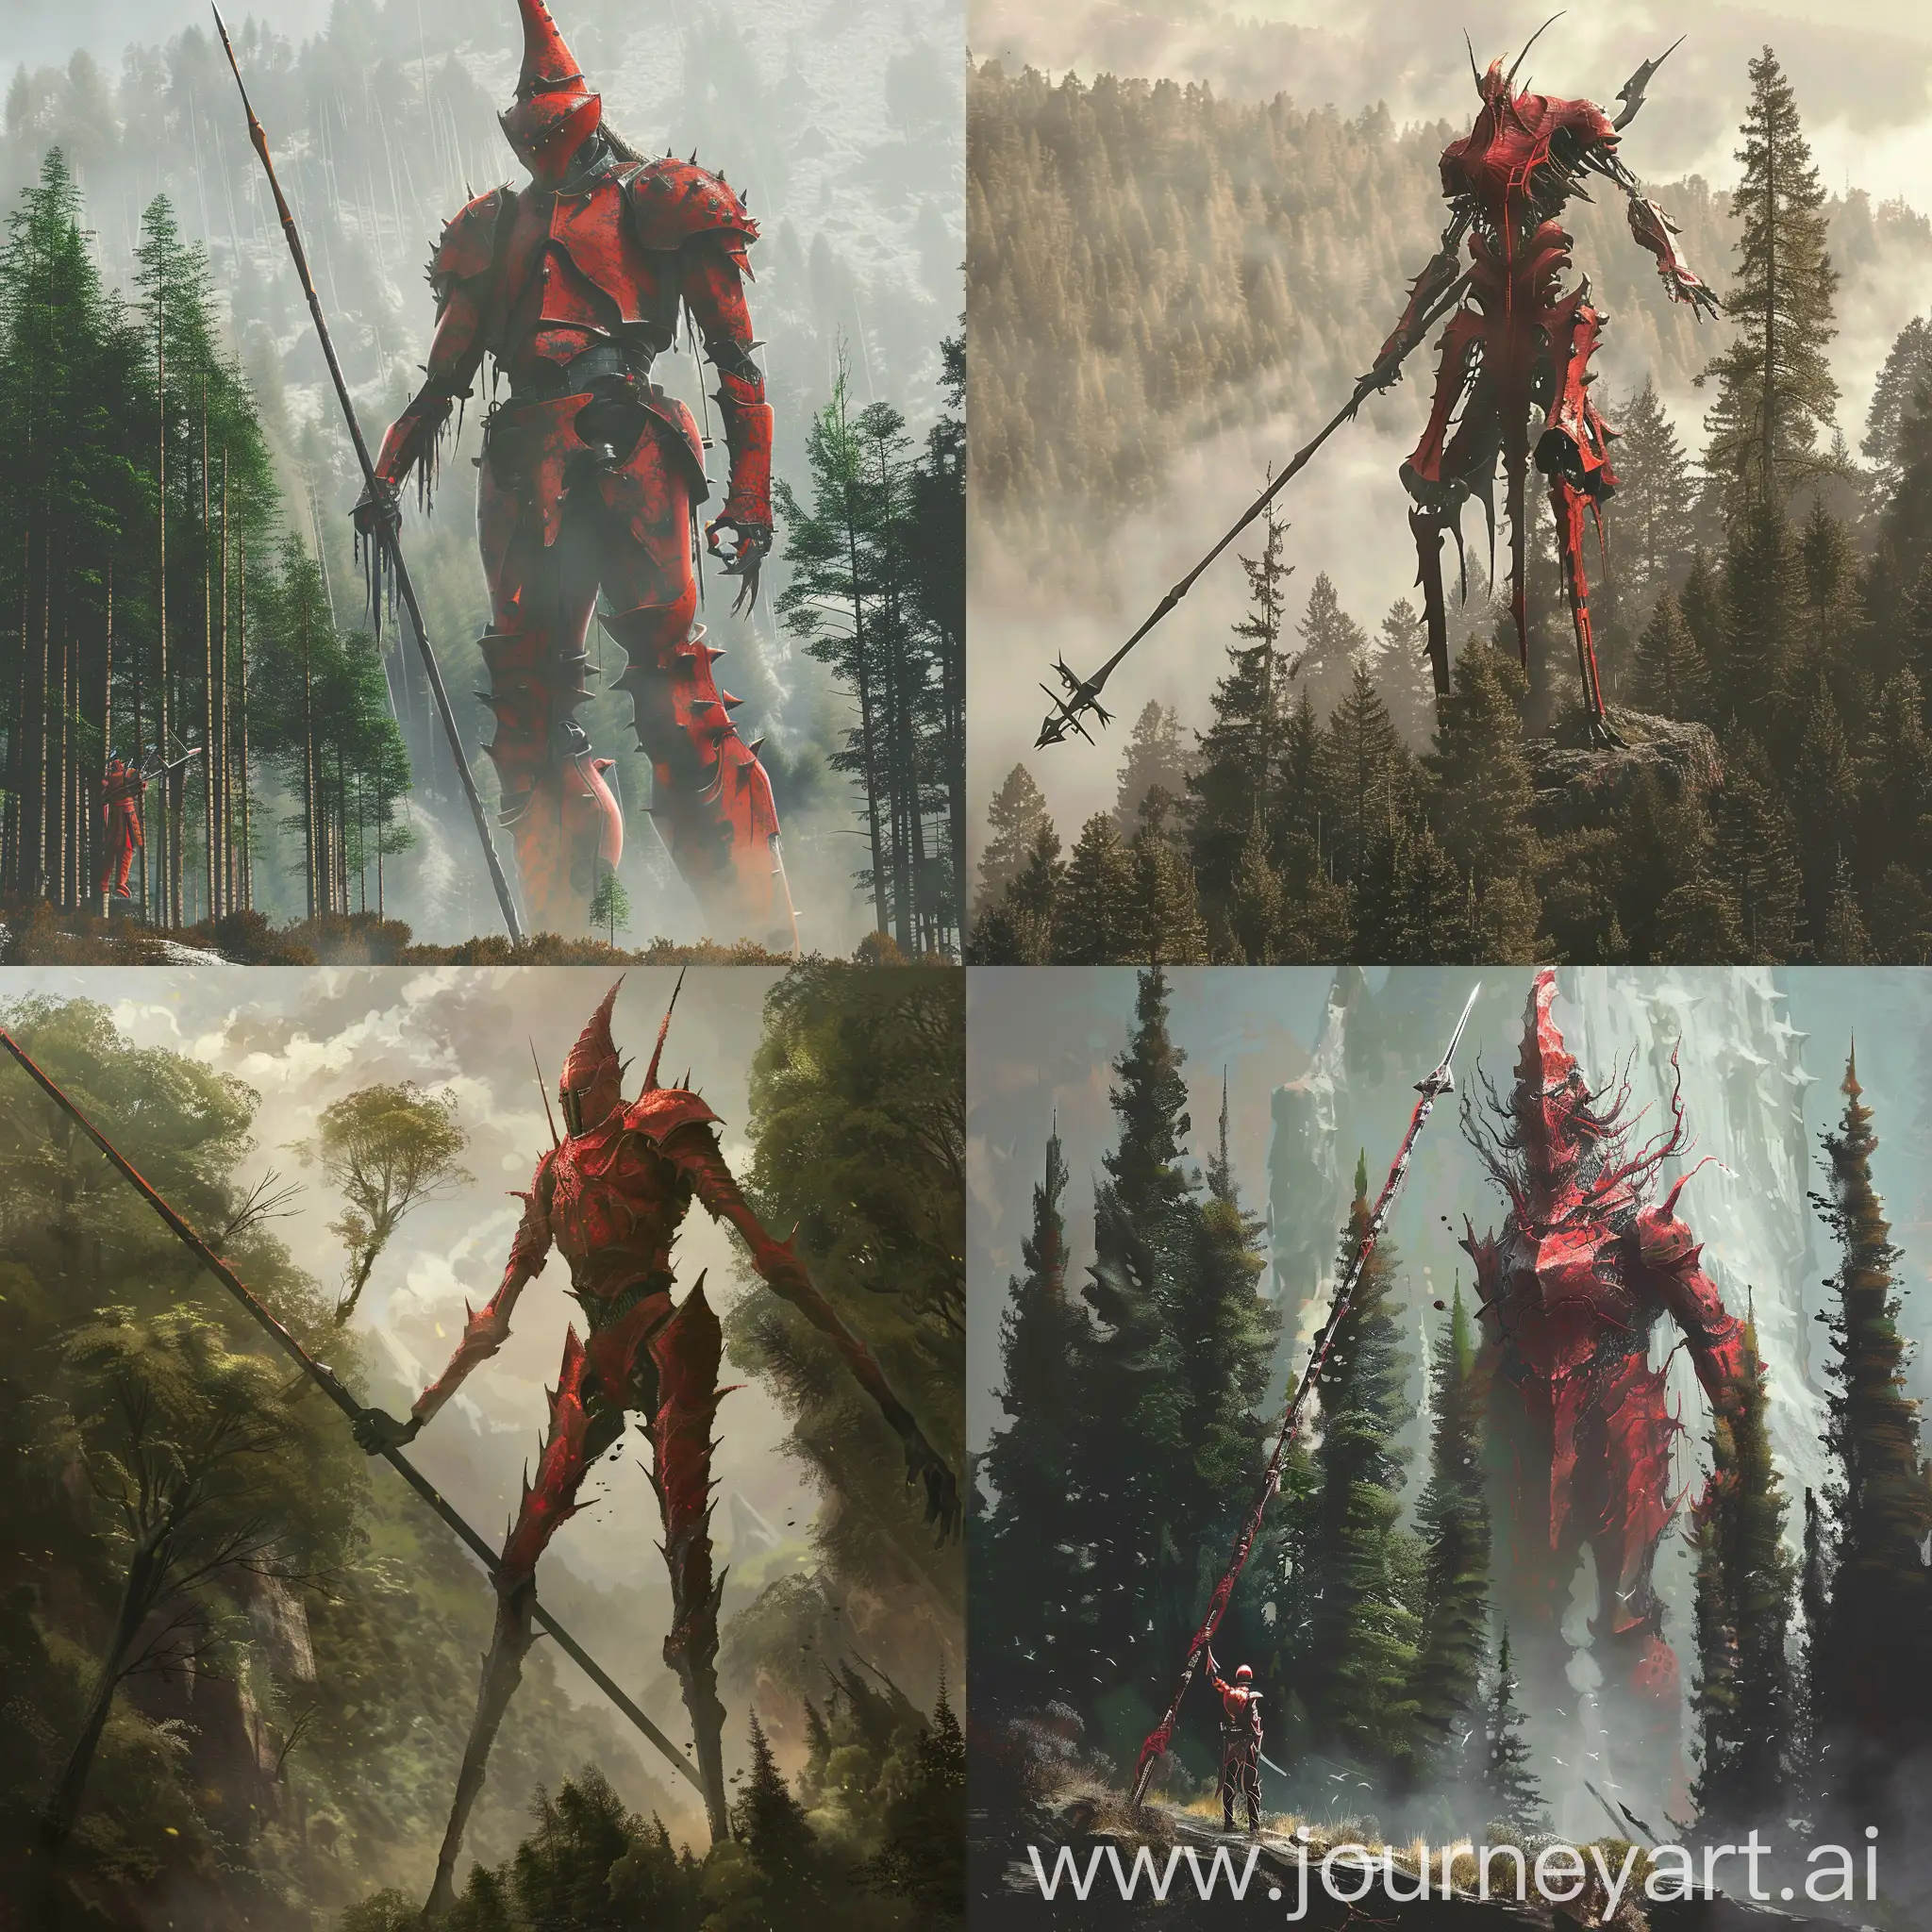 фентези высокое 6 метровое существо похожее на рыцаря в красных доспехах и длинным копьем на фоне деревьев которые меньше чем он